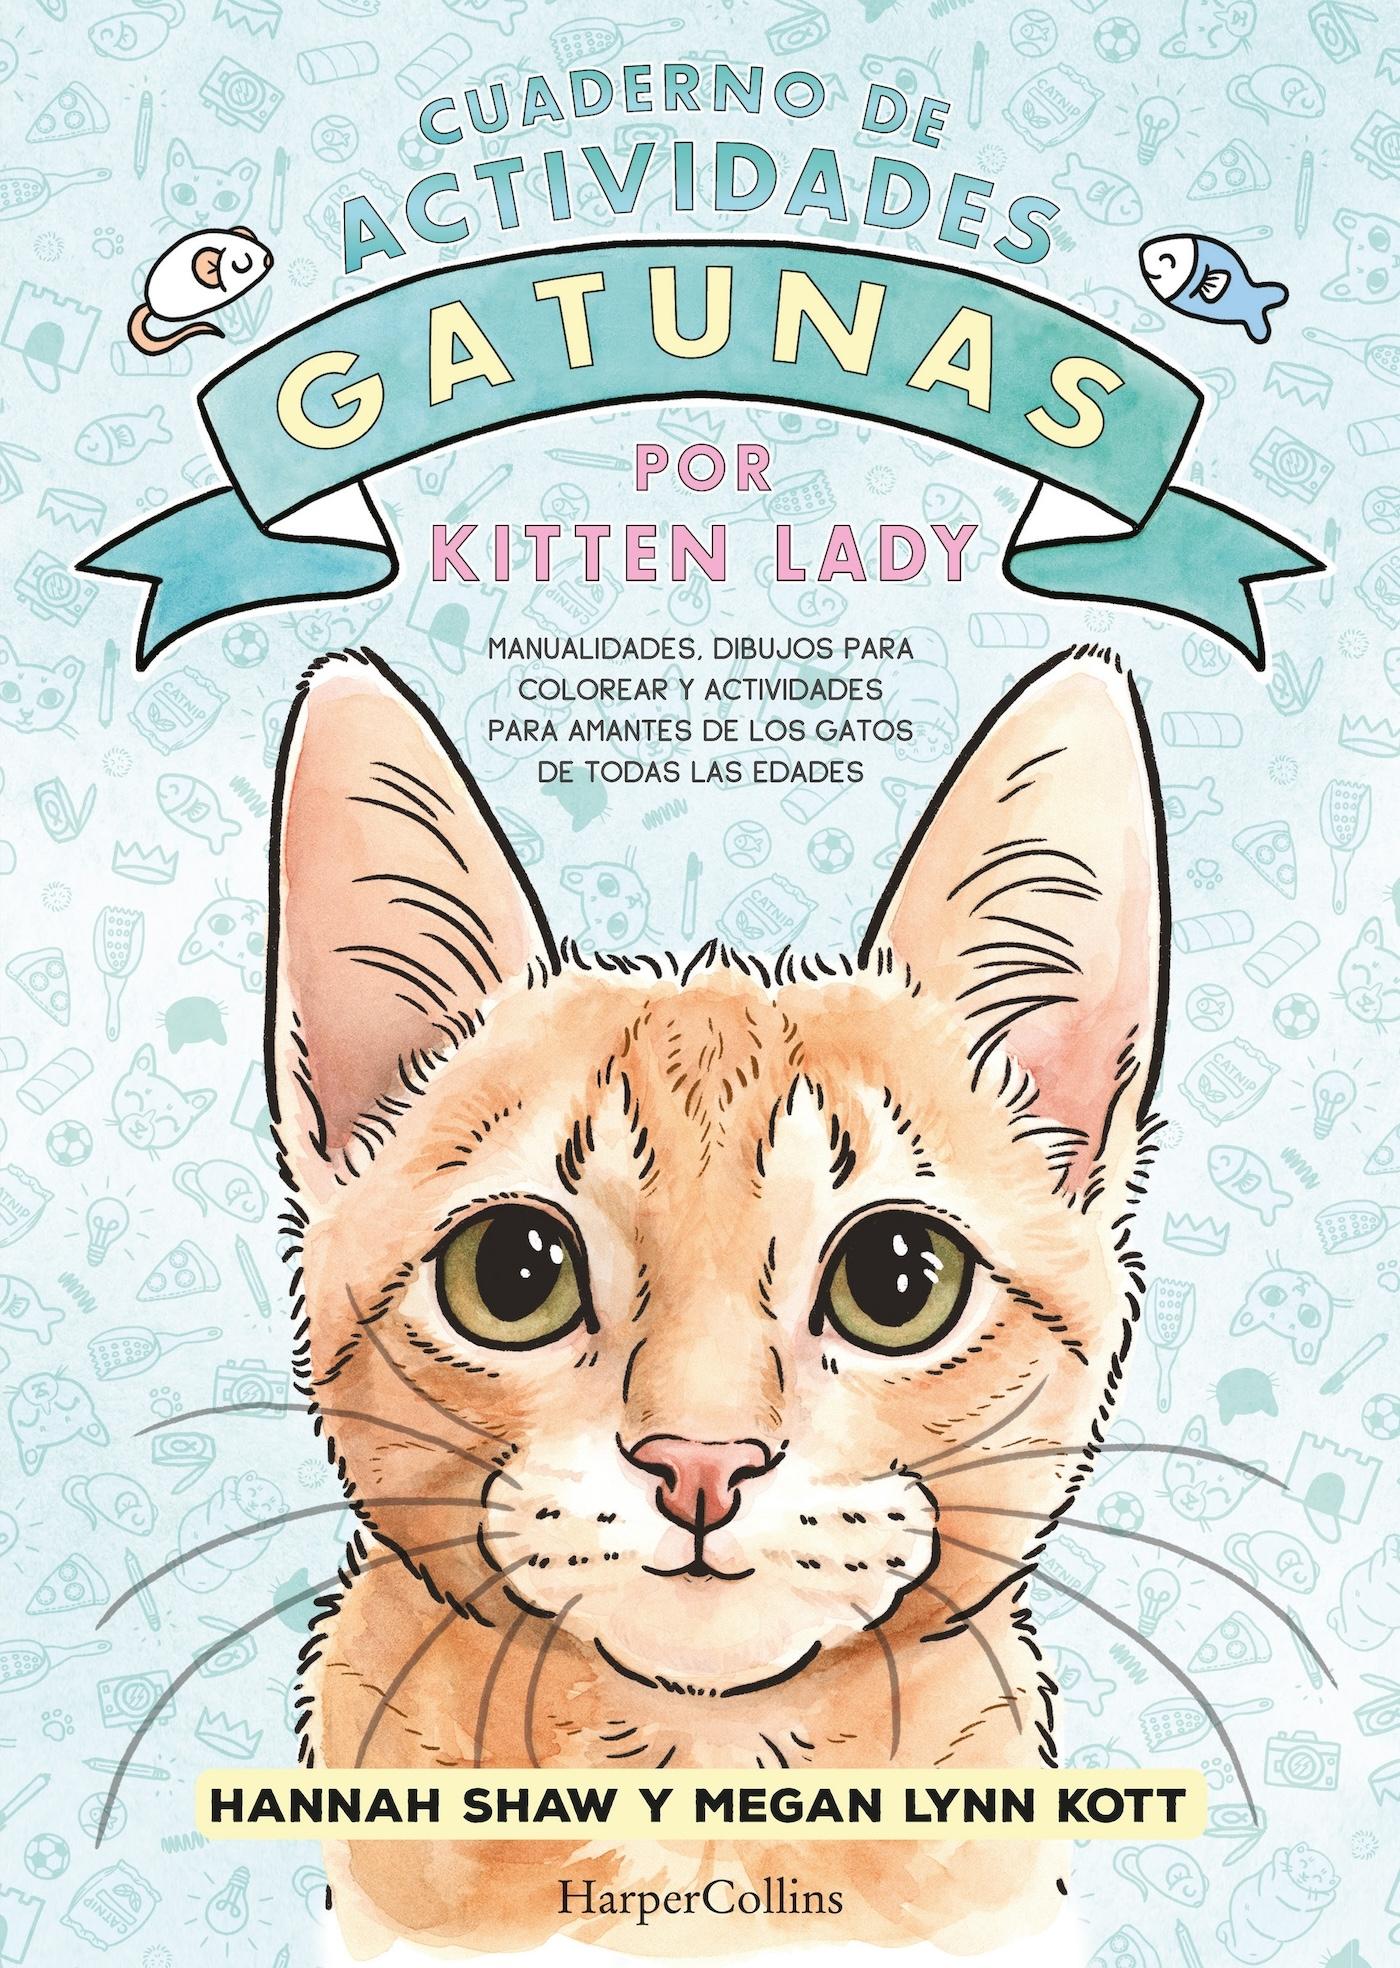 Cuaderno de Actividades Gatunas por Kitten Lady. 